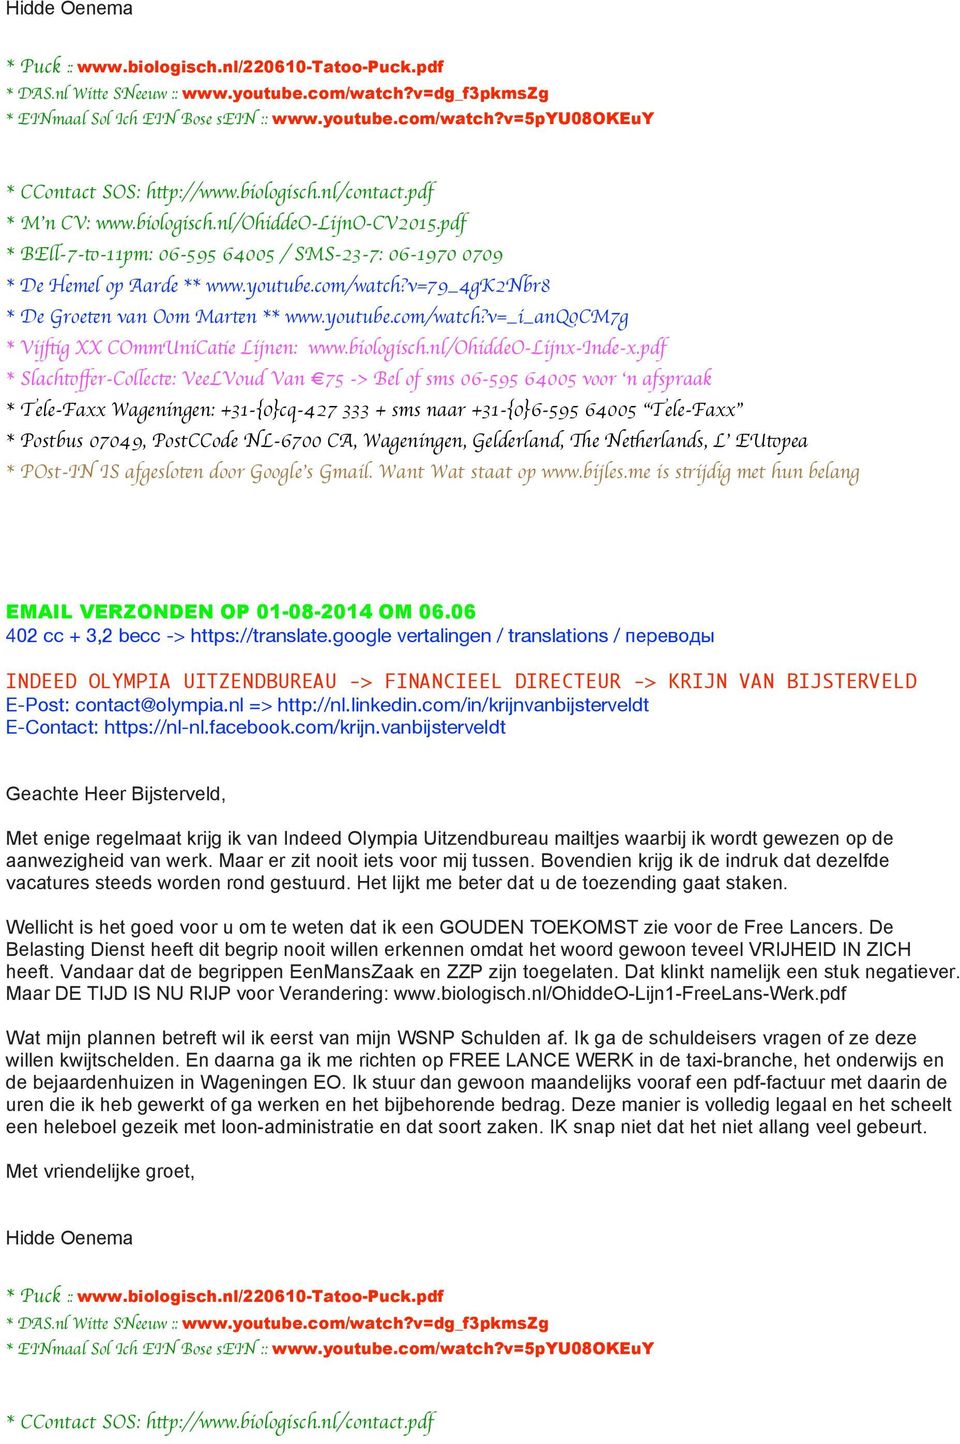 com/in/krijnvanbijsterveldt E-Contact: https://nl-nl.facebook.com/krijn.